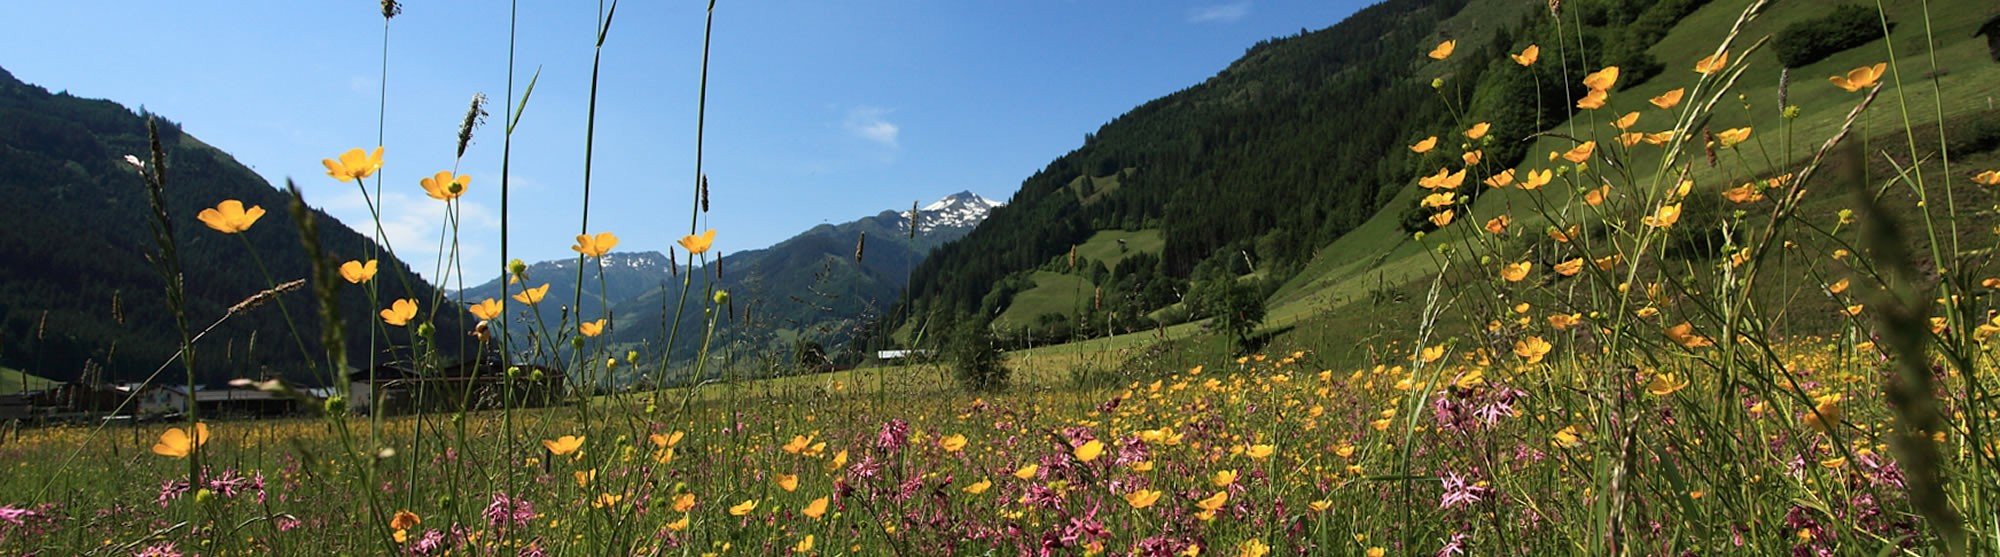 Blumenwiese im Großarltal, Österreich © Tourismusverband Großarltal